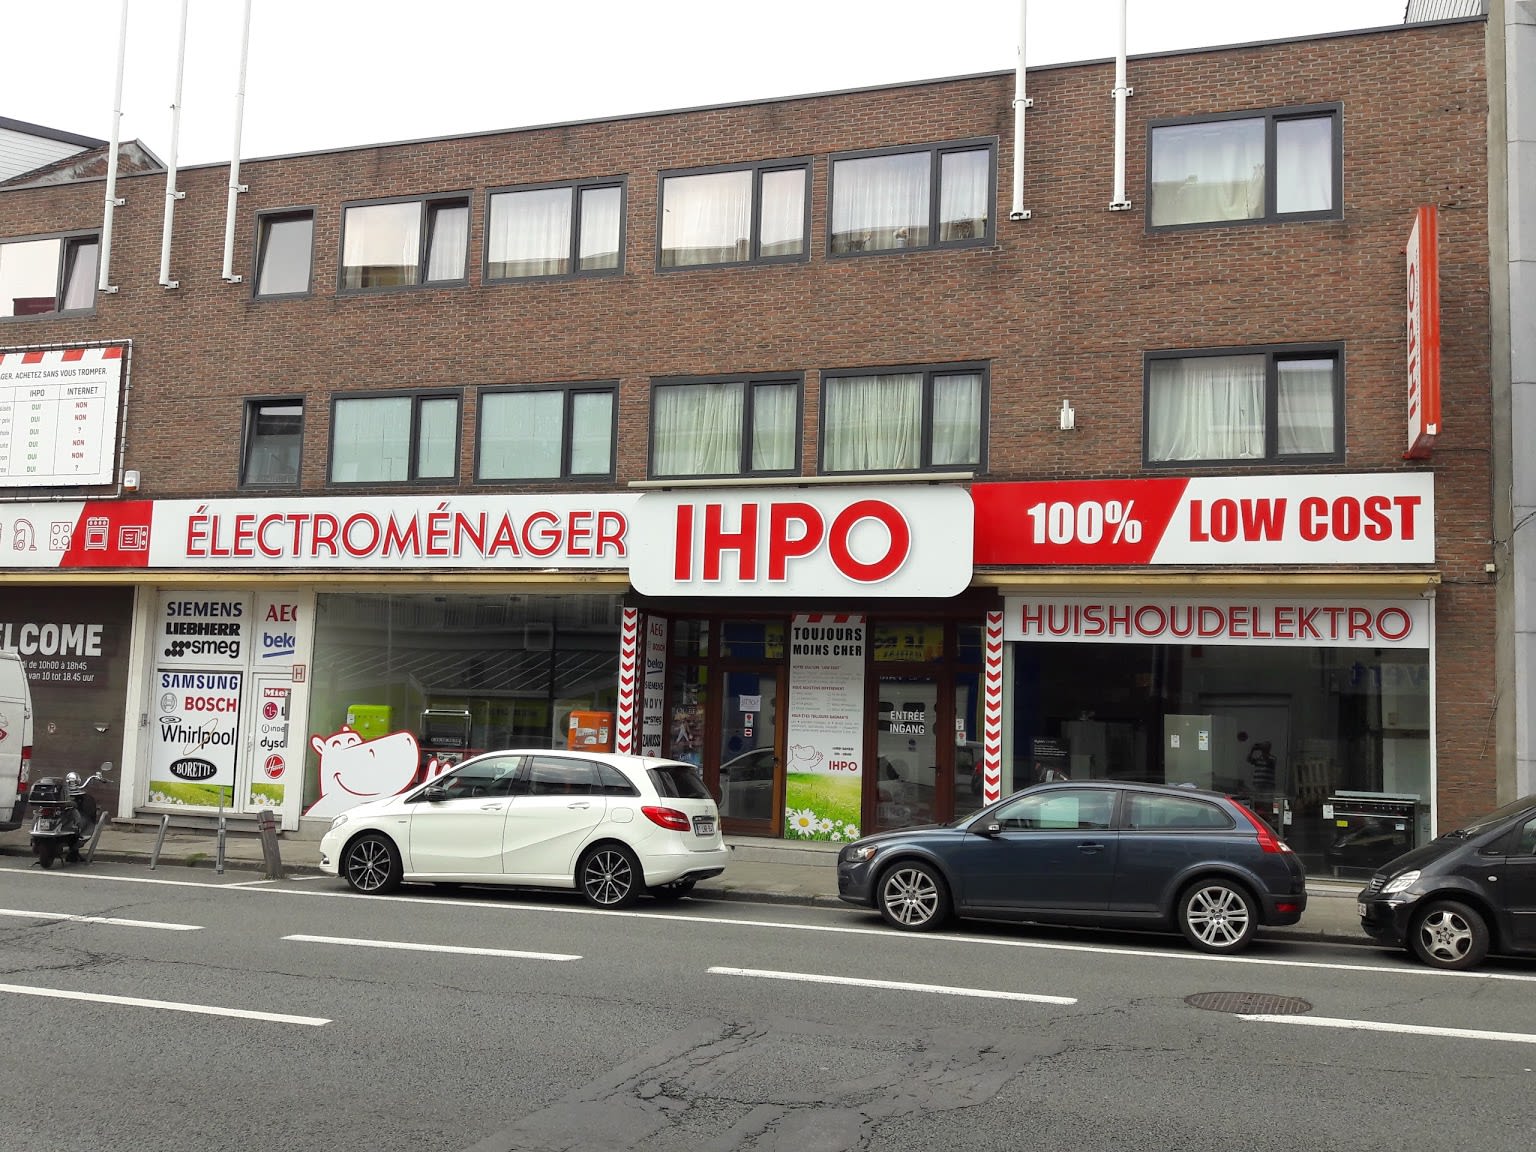 IPHO Electromenager